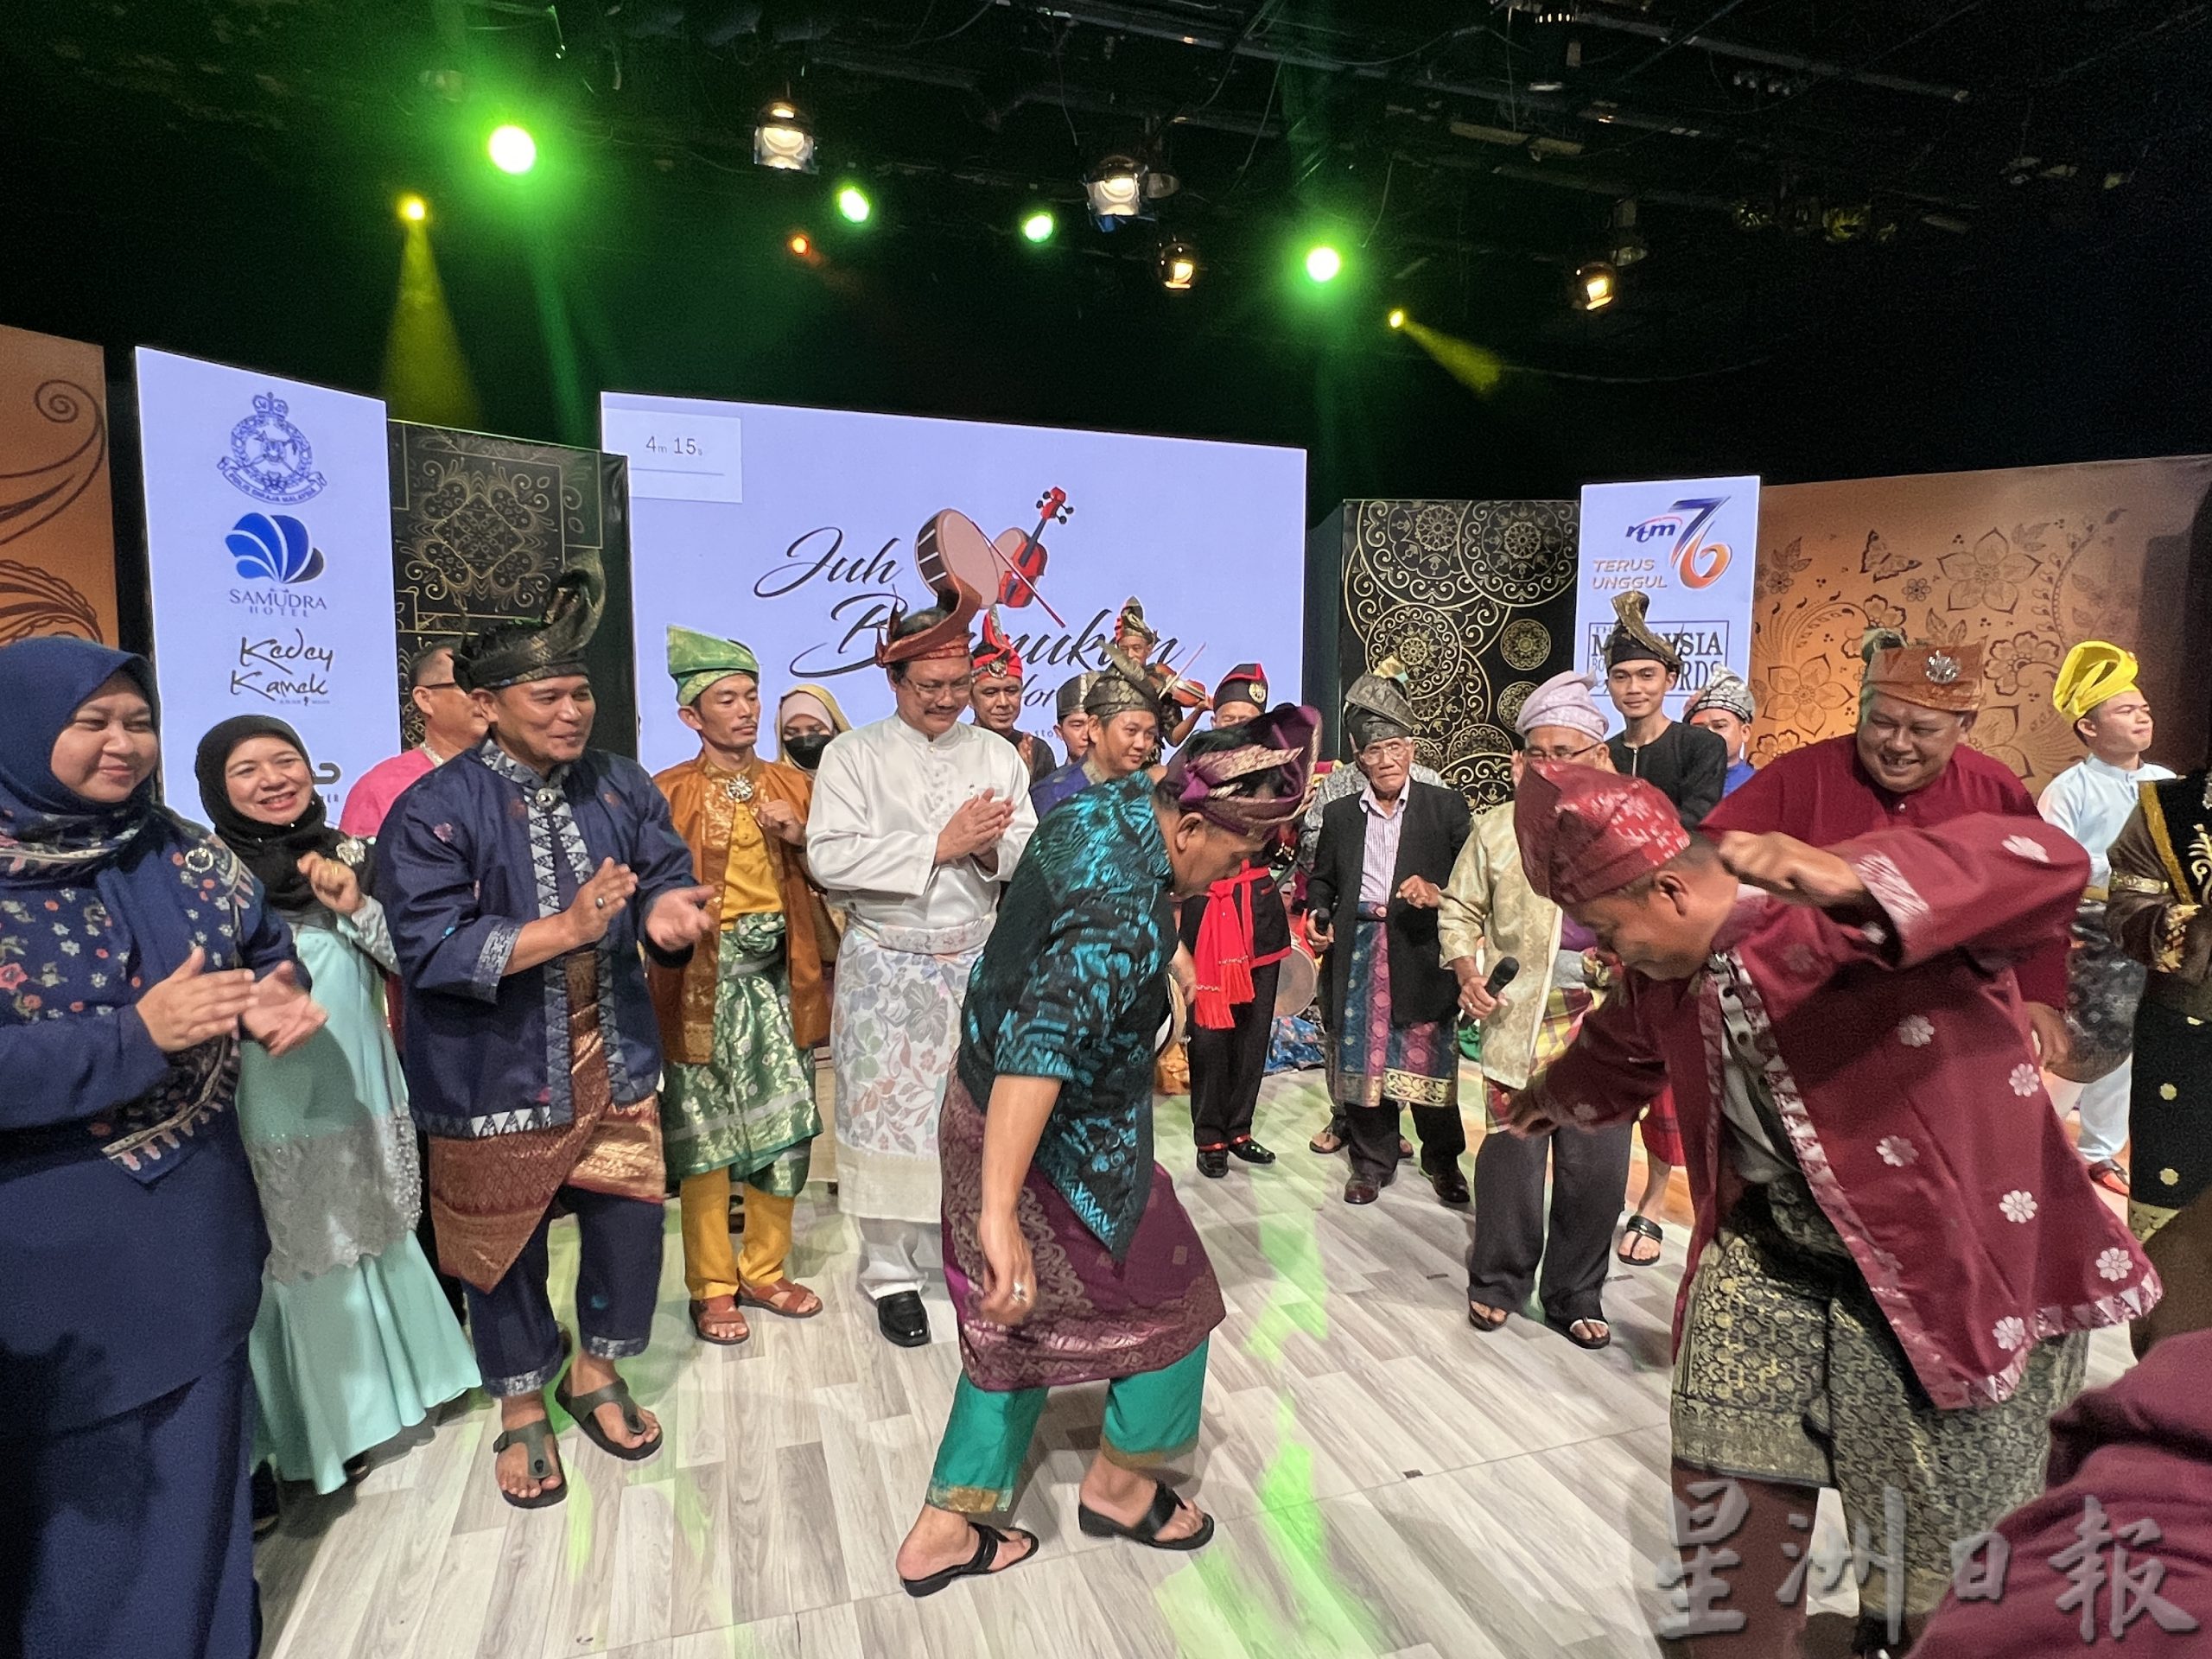 马来传统民族击乐舞动